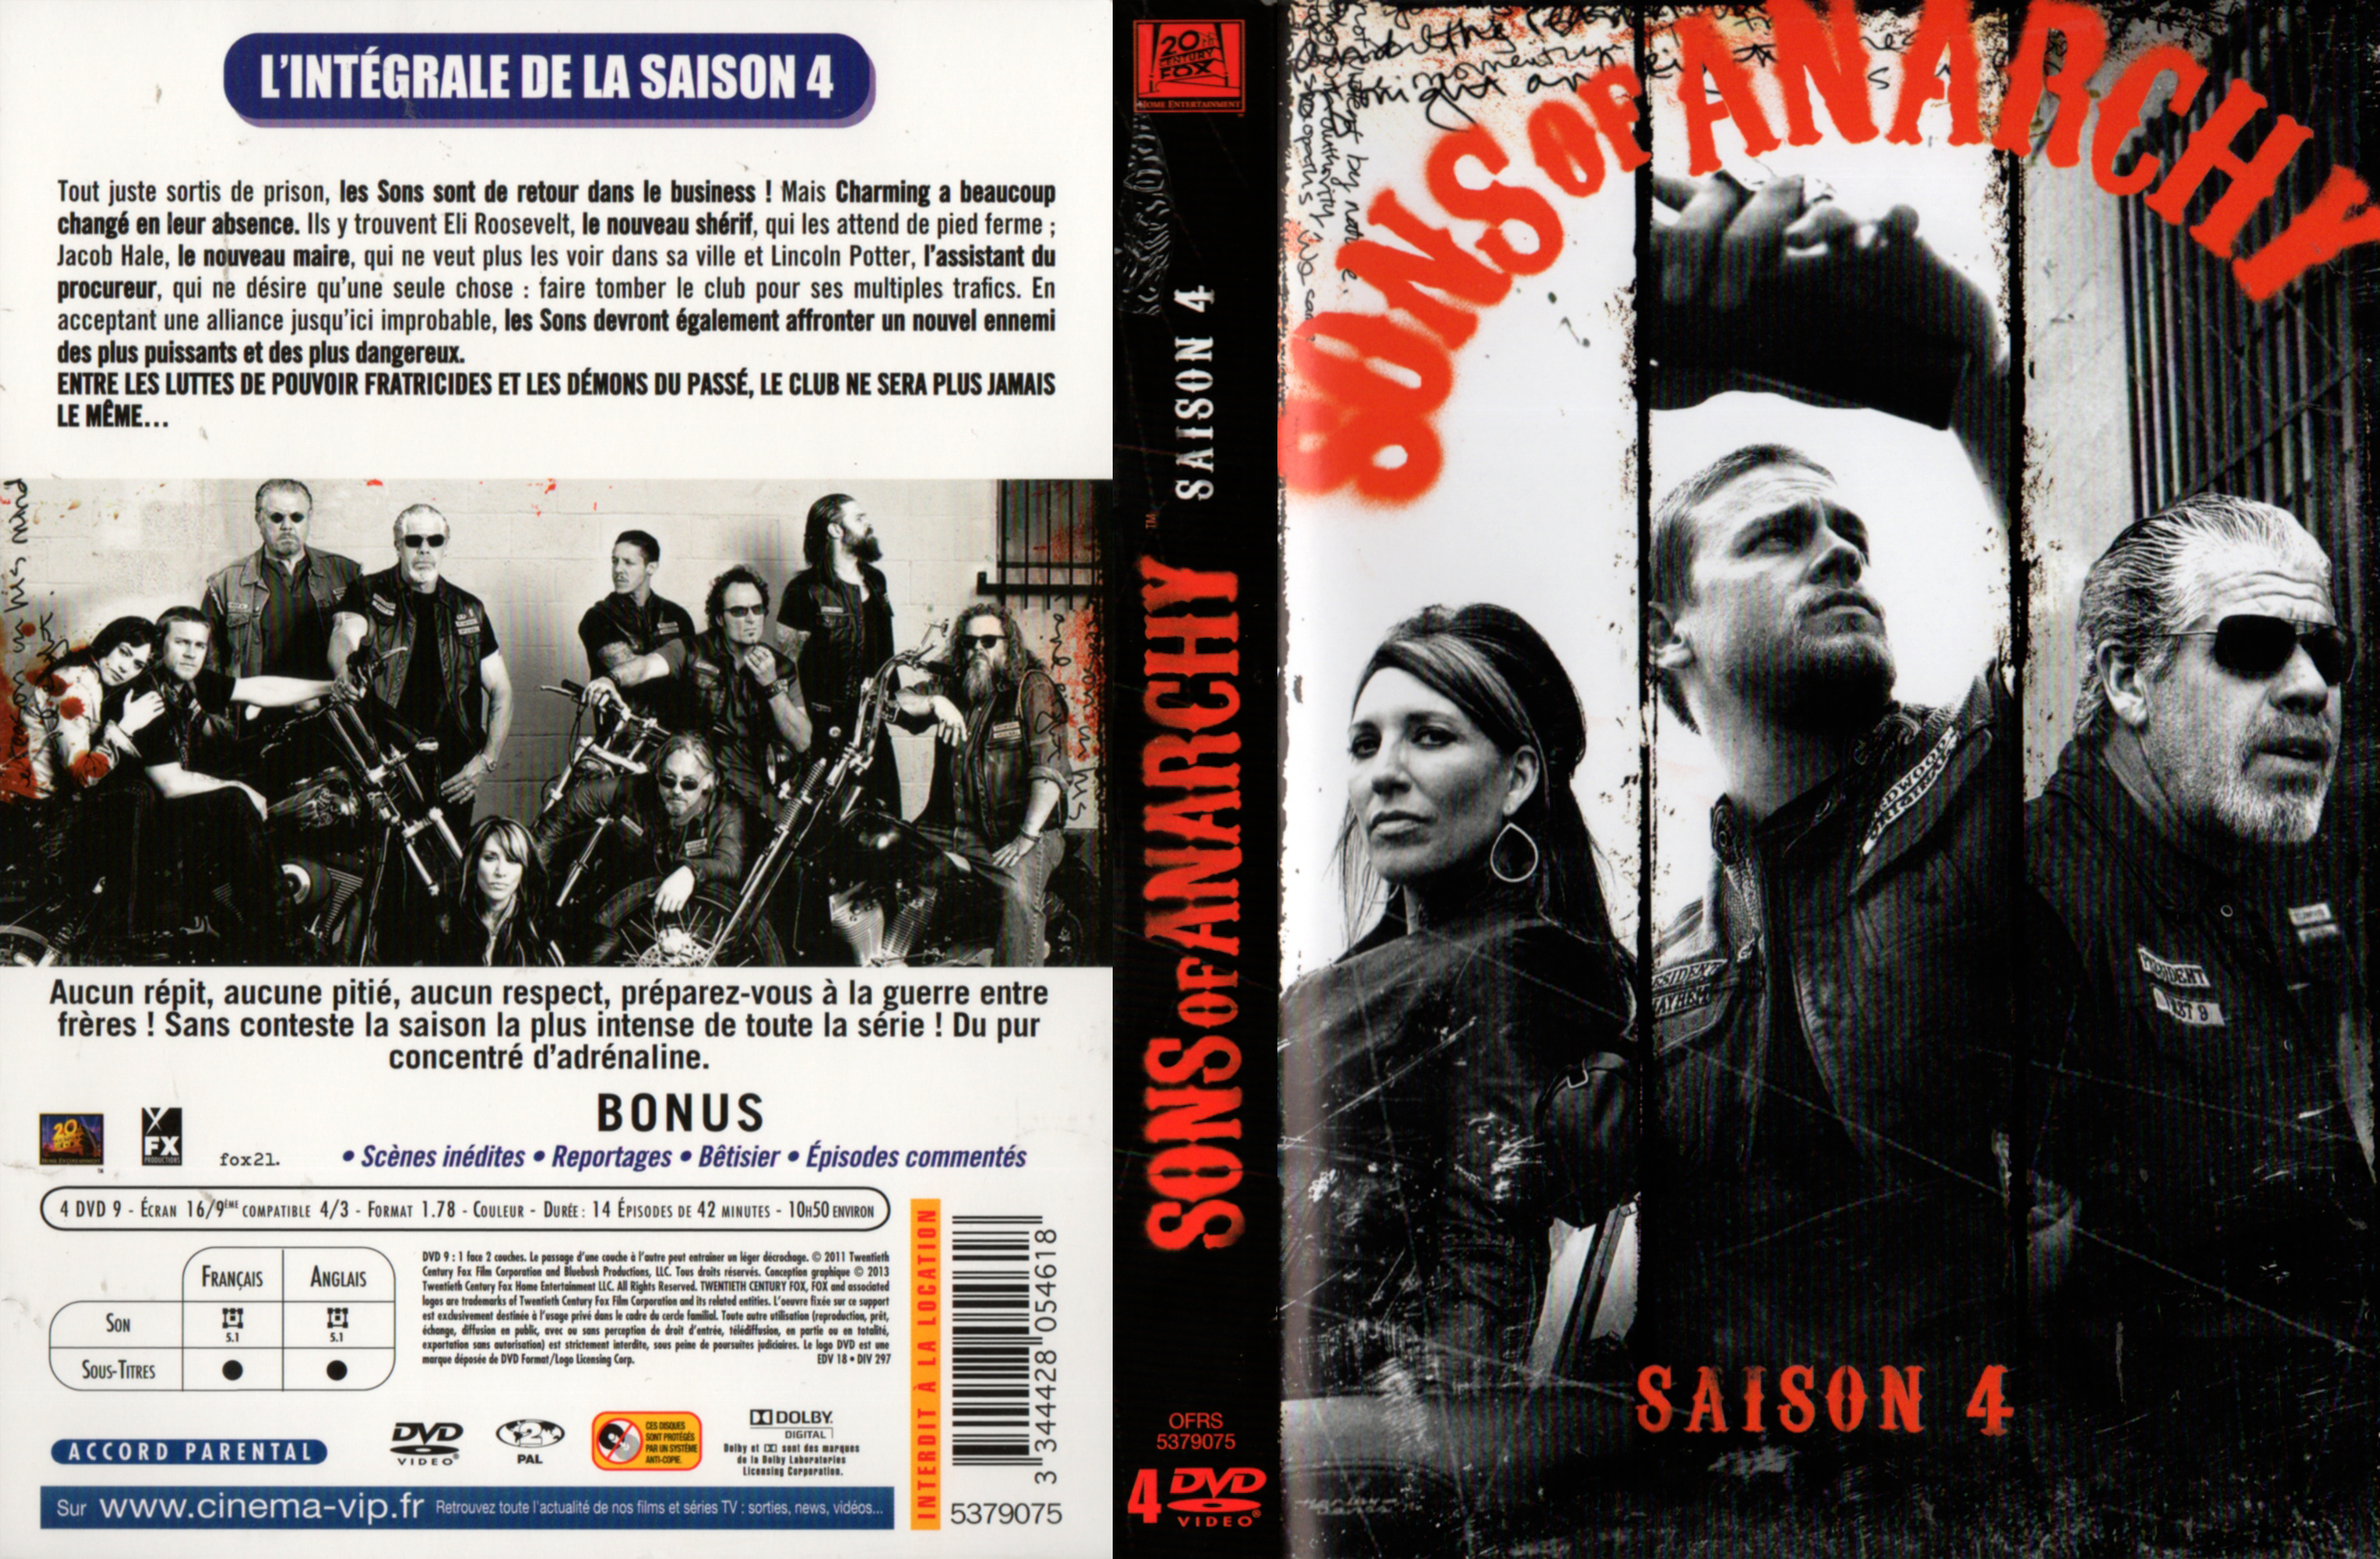 Jaquette DVD Sons of anarchy Saison 4 COFFRET